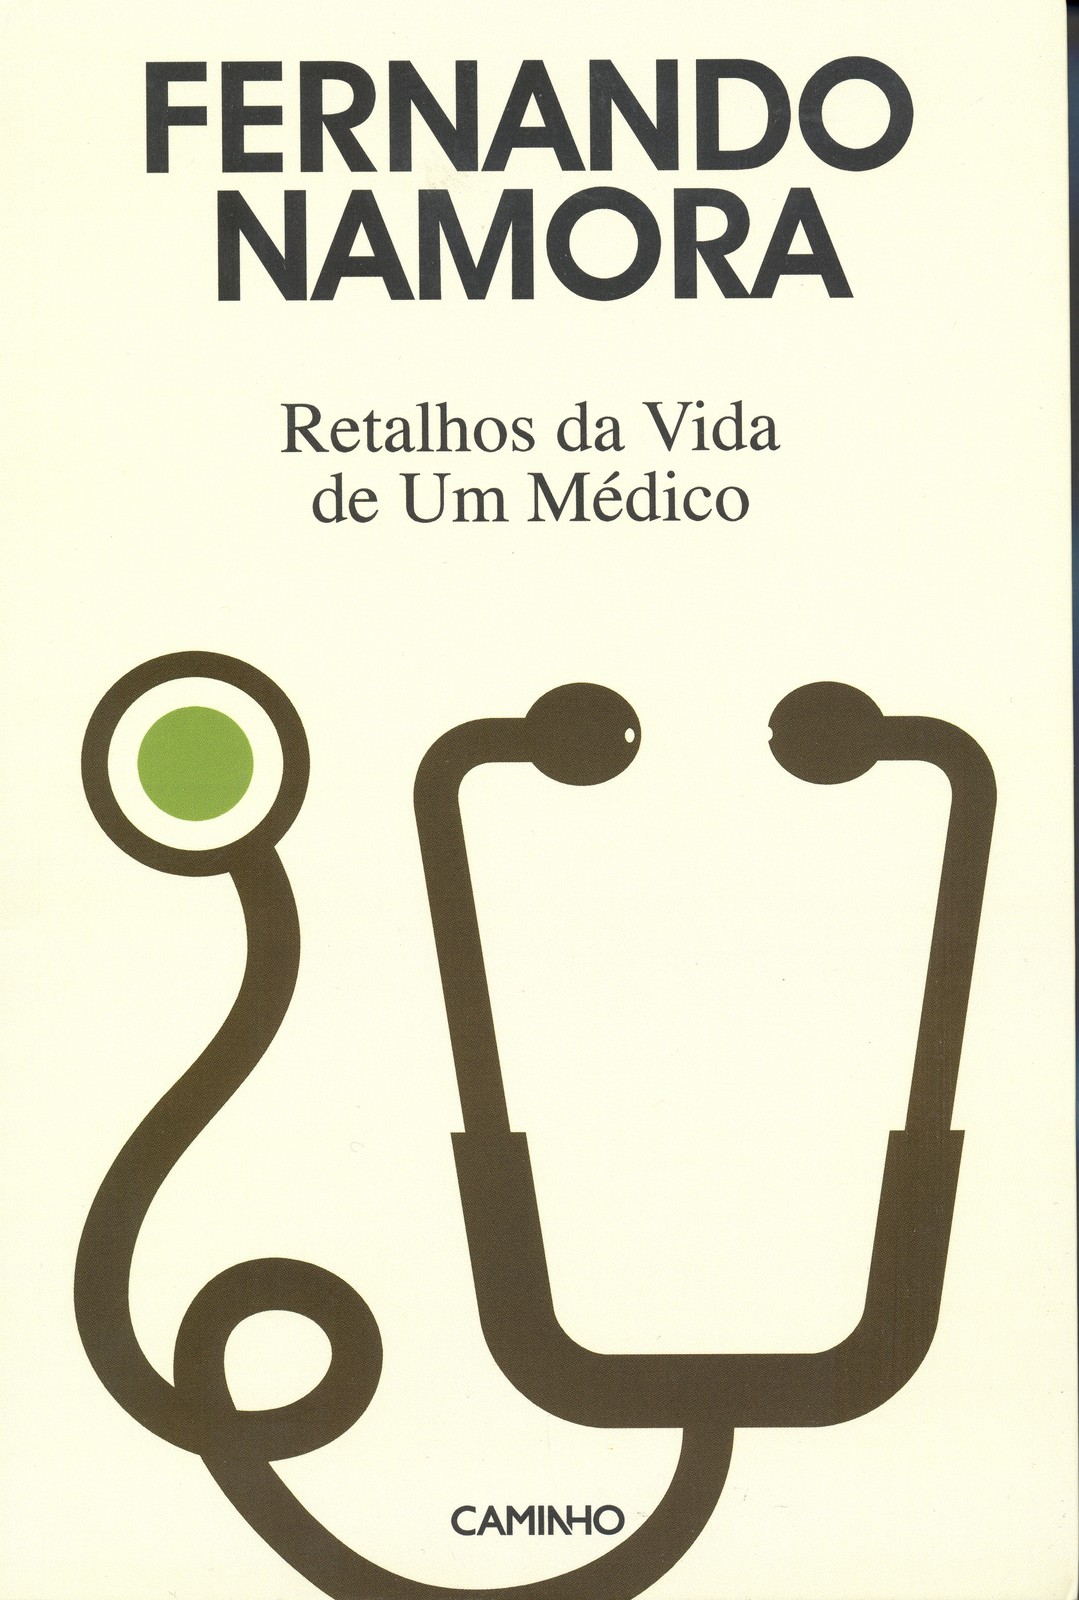 Fernando Namora - Retalhos da Vida de um Médico